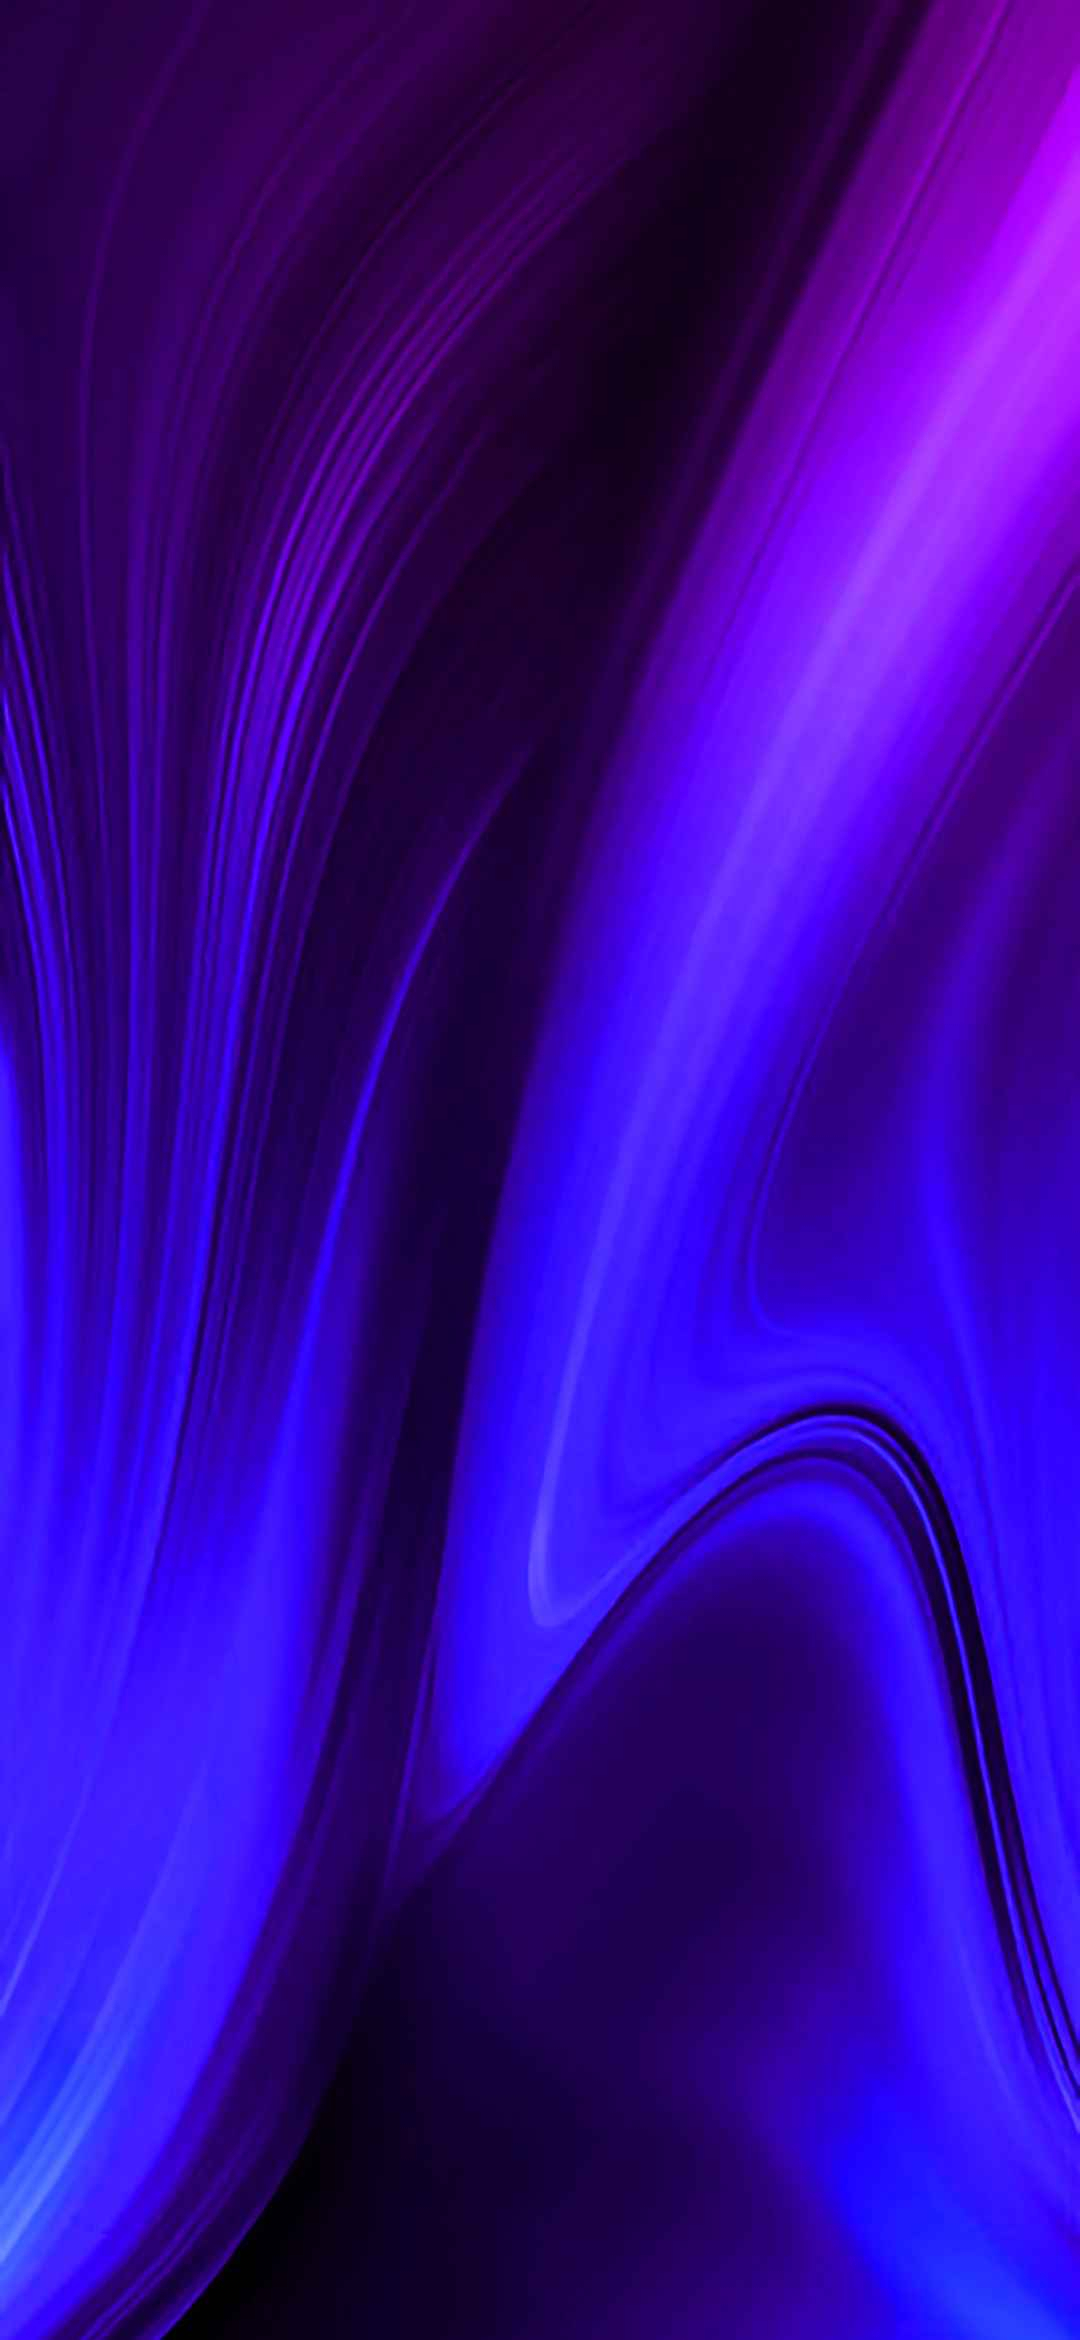 삼성 갤럭시 그랜드 프라임 플러스 벽지,푸른,제비꽃,보라색,강청색,빛